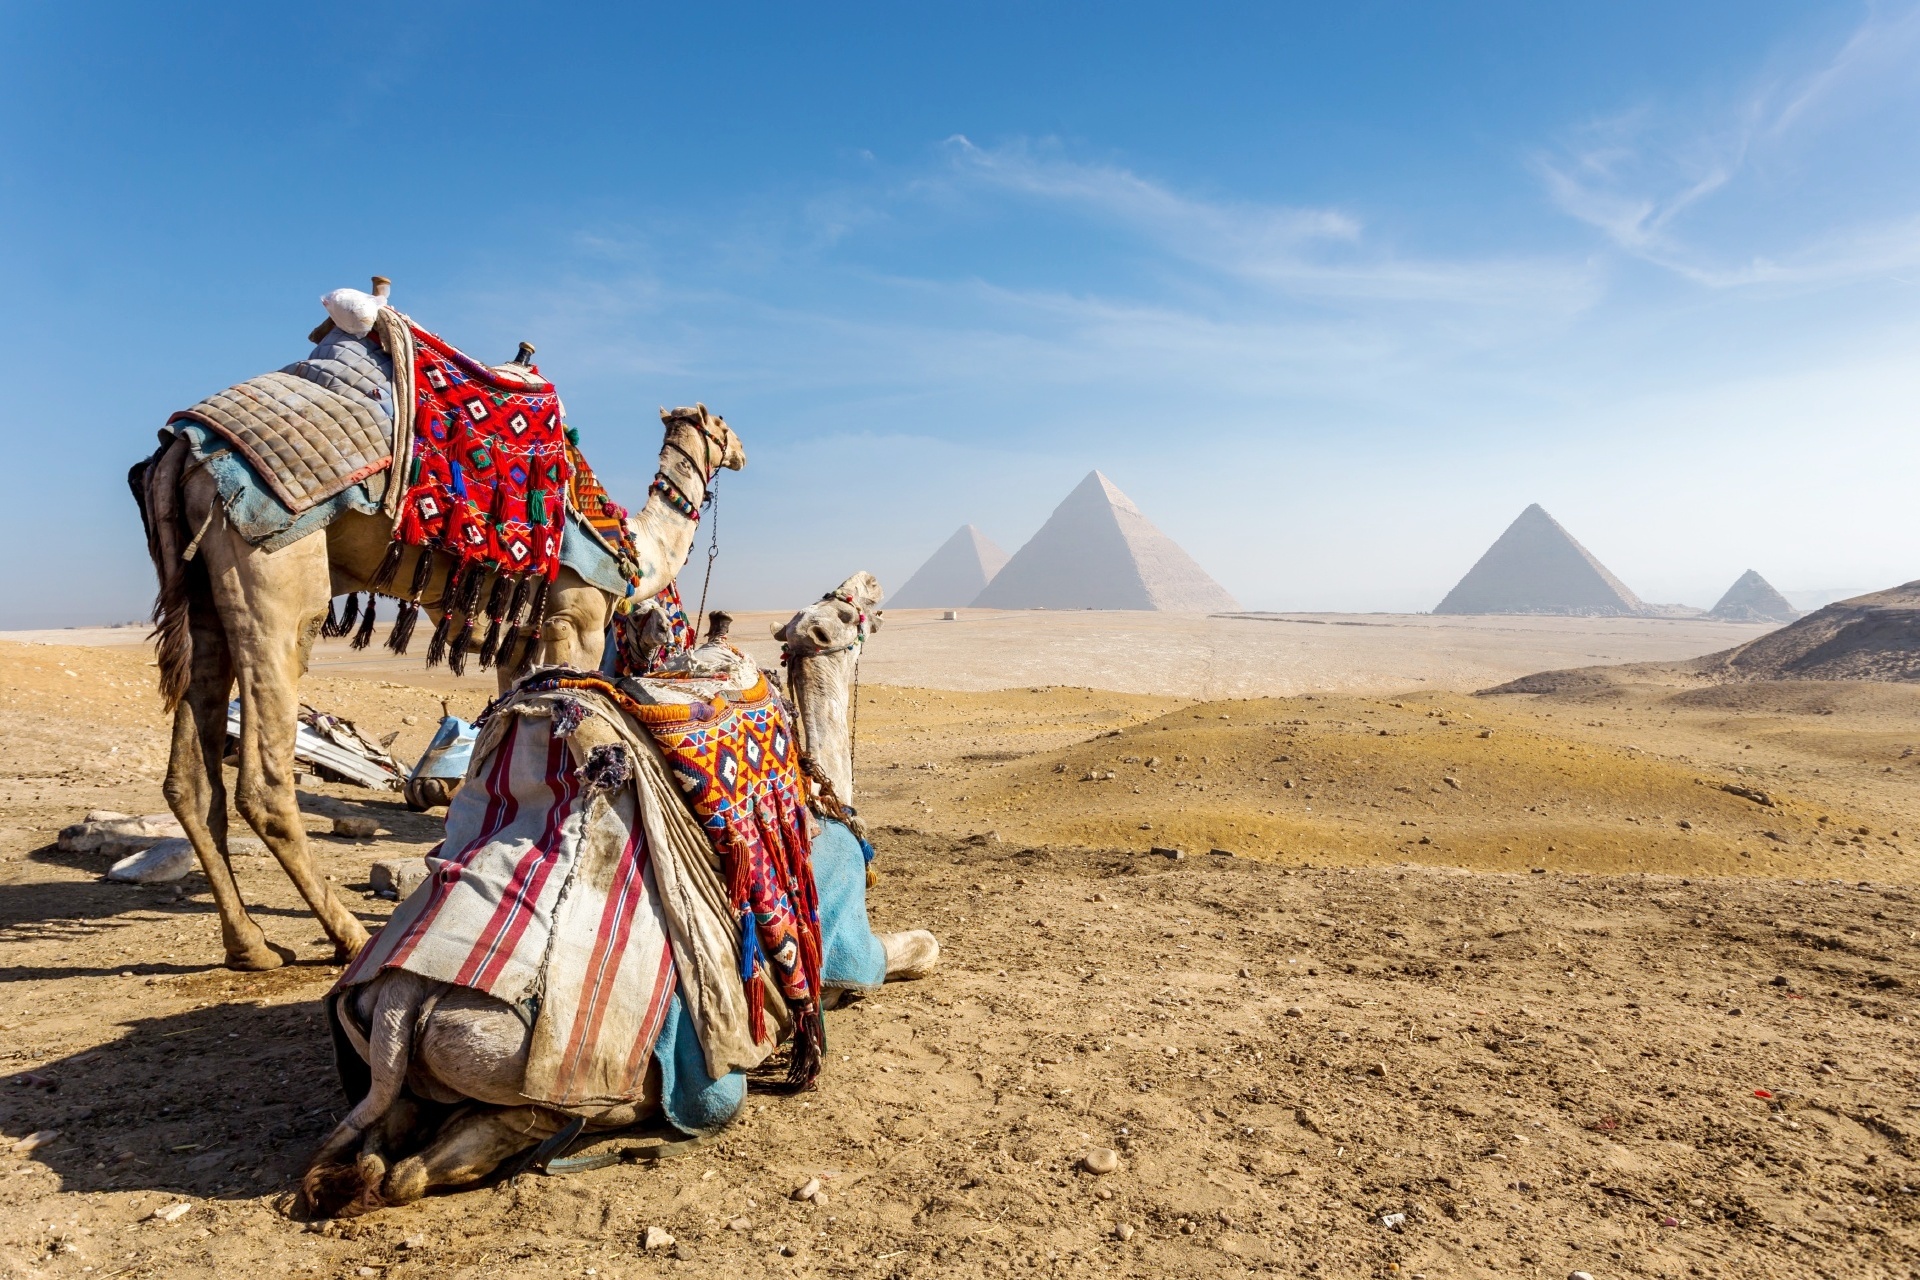 ギザのピラミッド　エジプトの風景